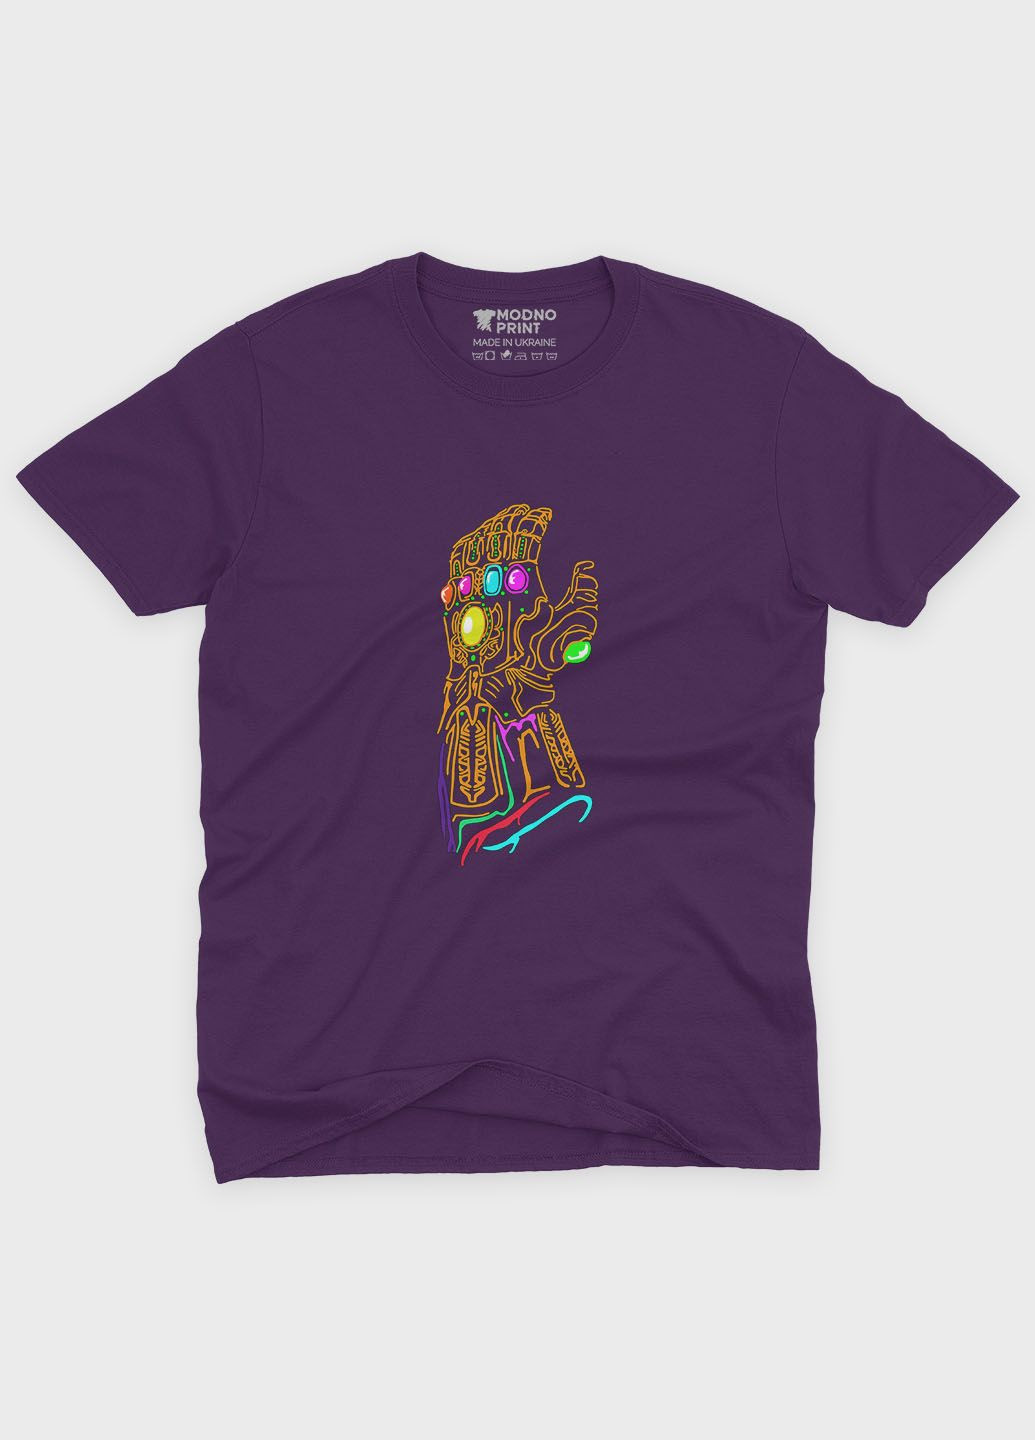 Фіолетова демісезонна футболка для хлопчика з принтом супезлодія - танос (ts001-1-dby-006-019-014-b) Modno